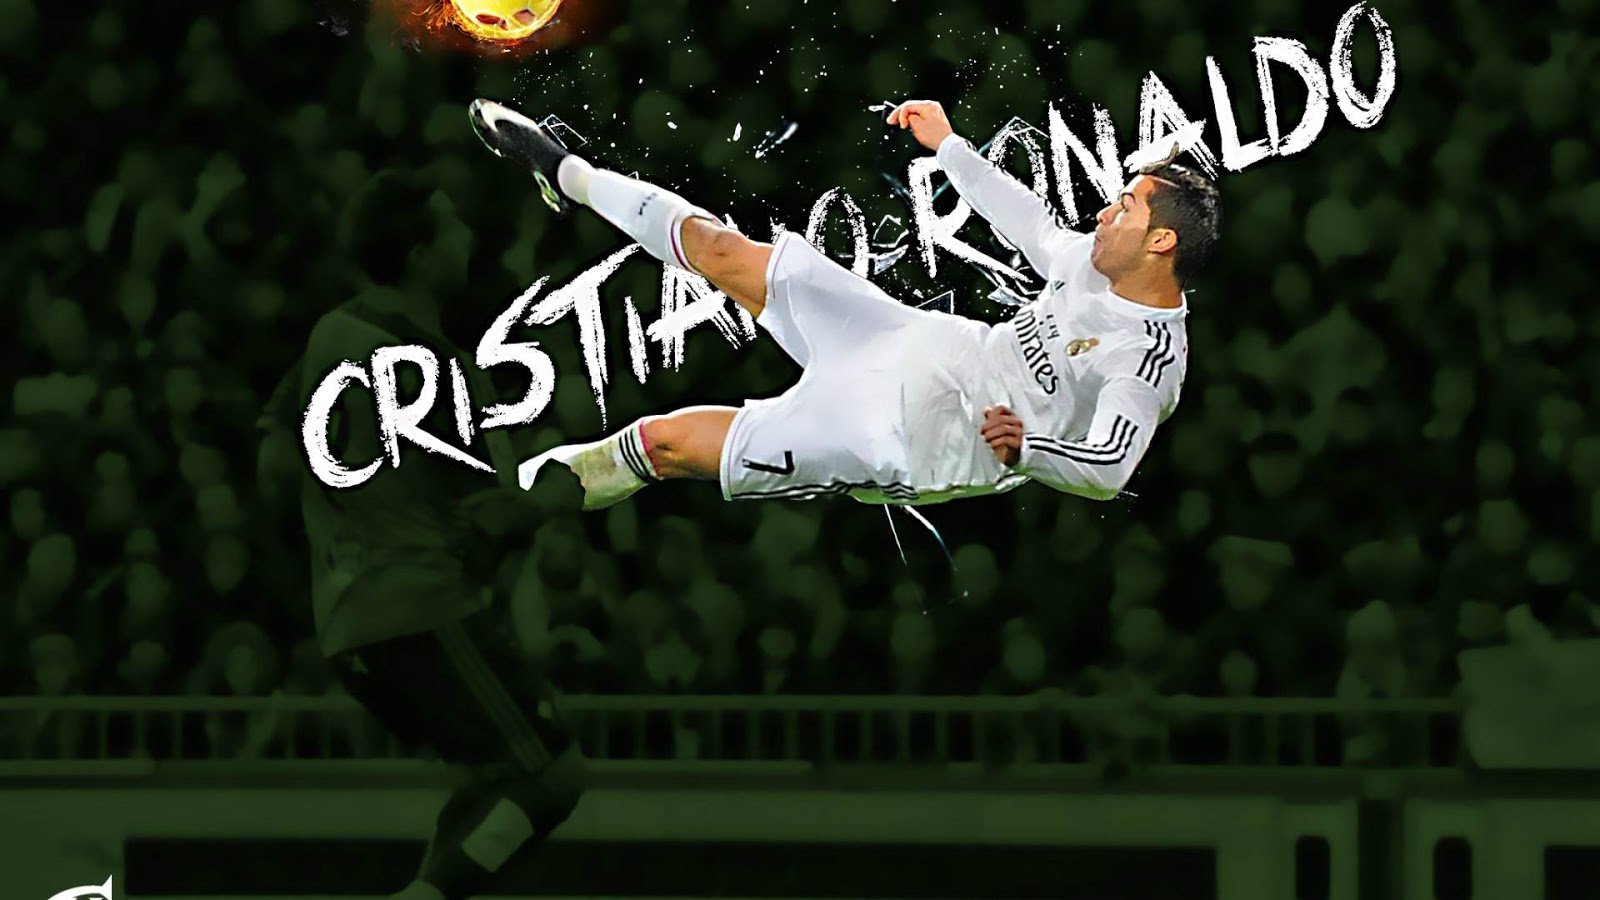 ultigamerz 105 Cristiano Ronaldo  hd  wallpaper  in 17 4 mb